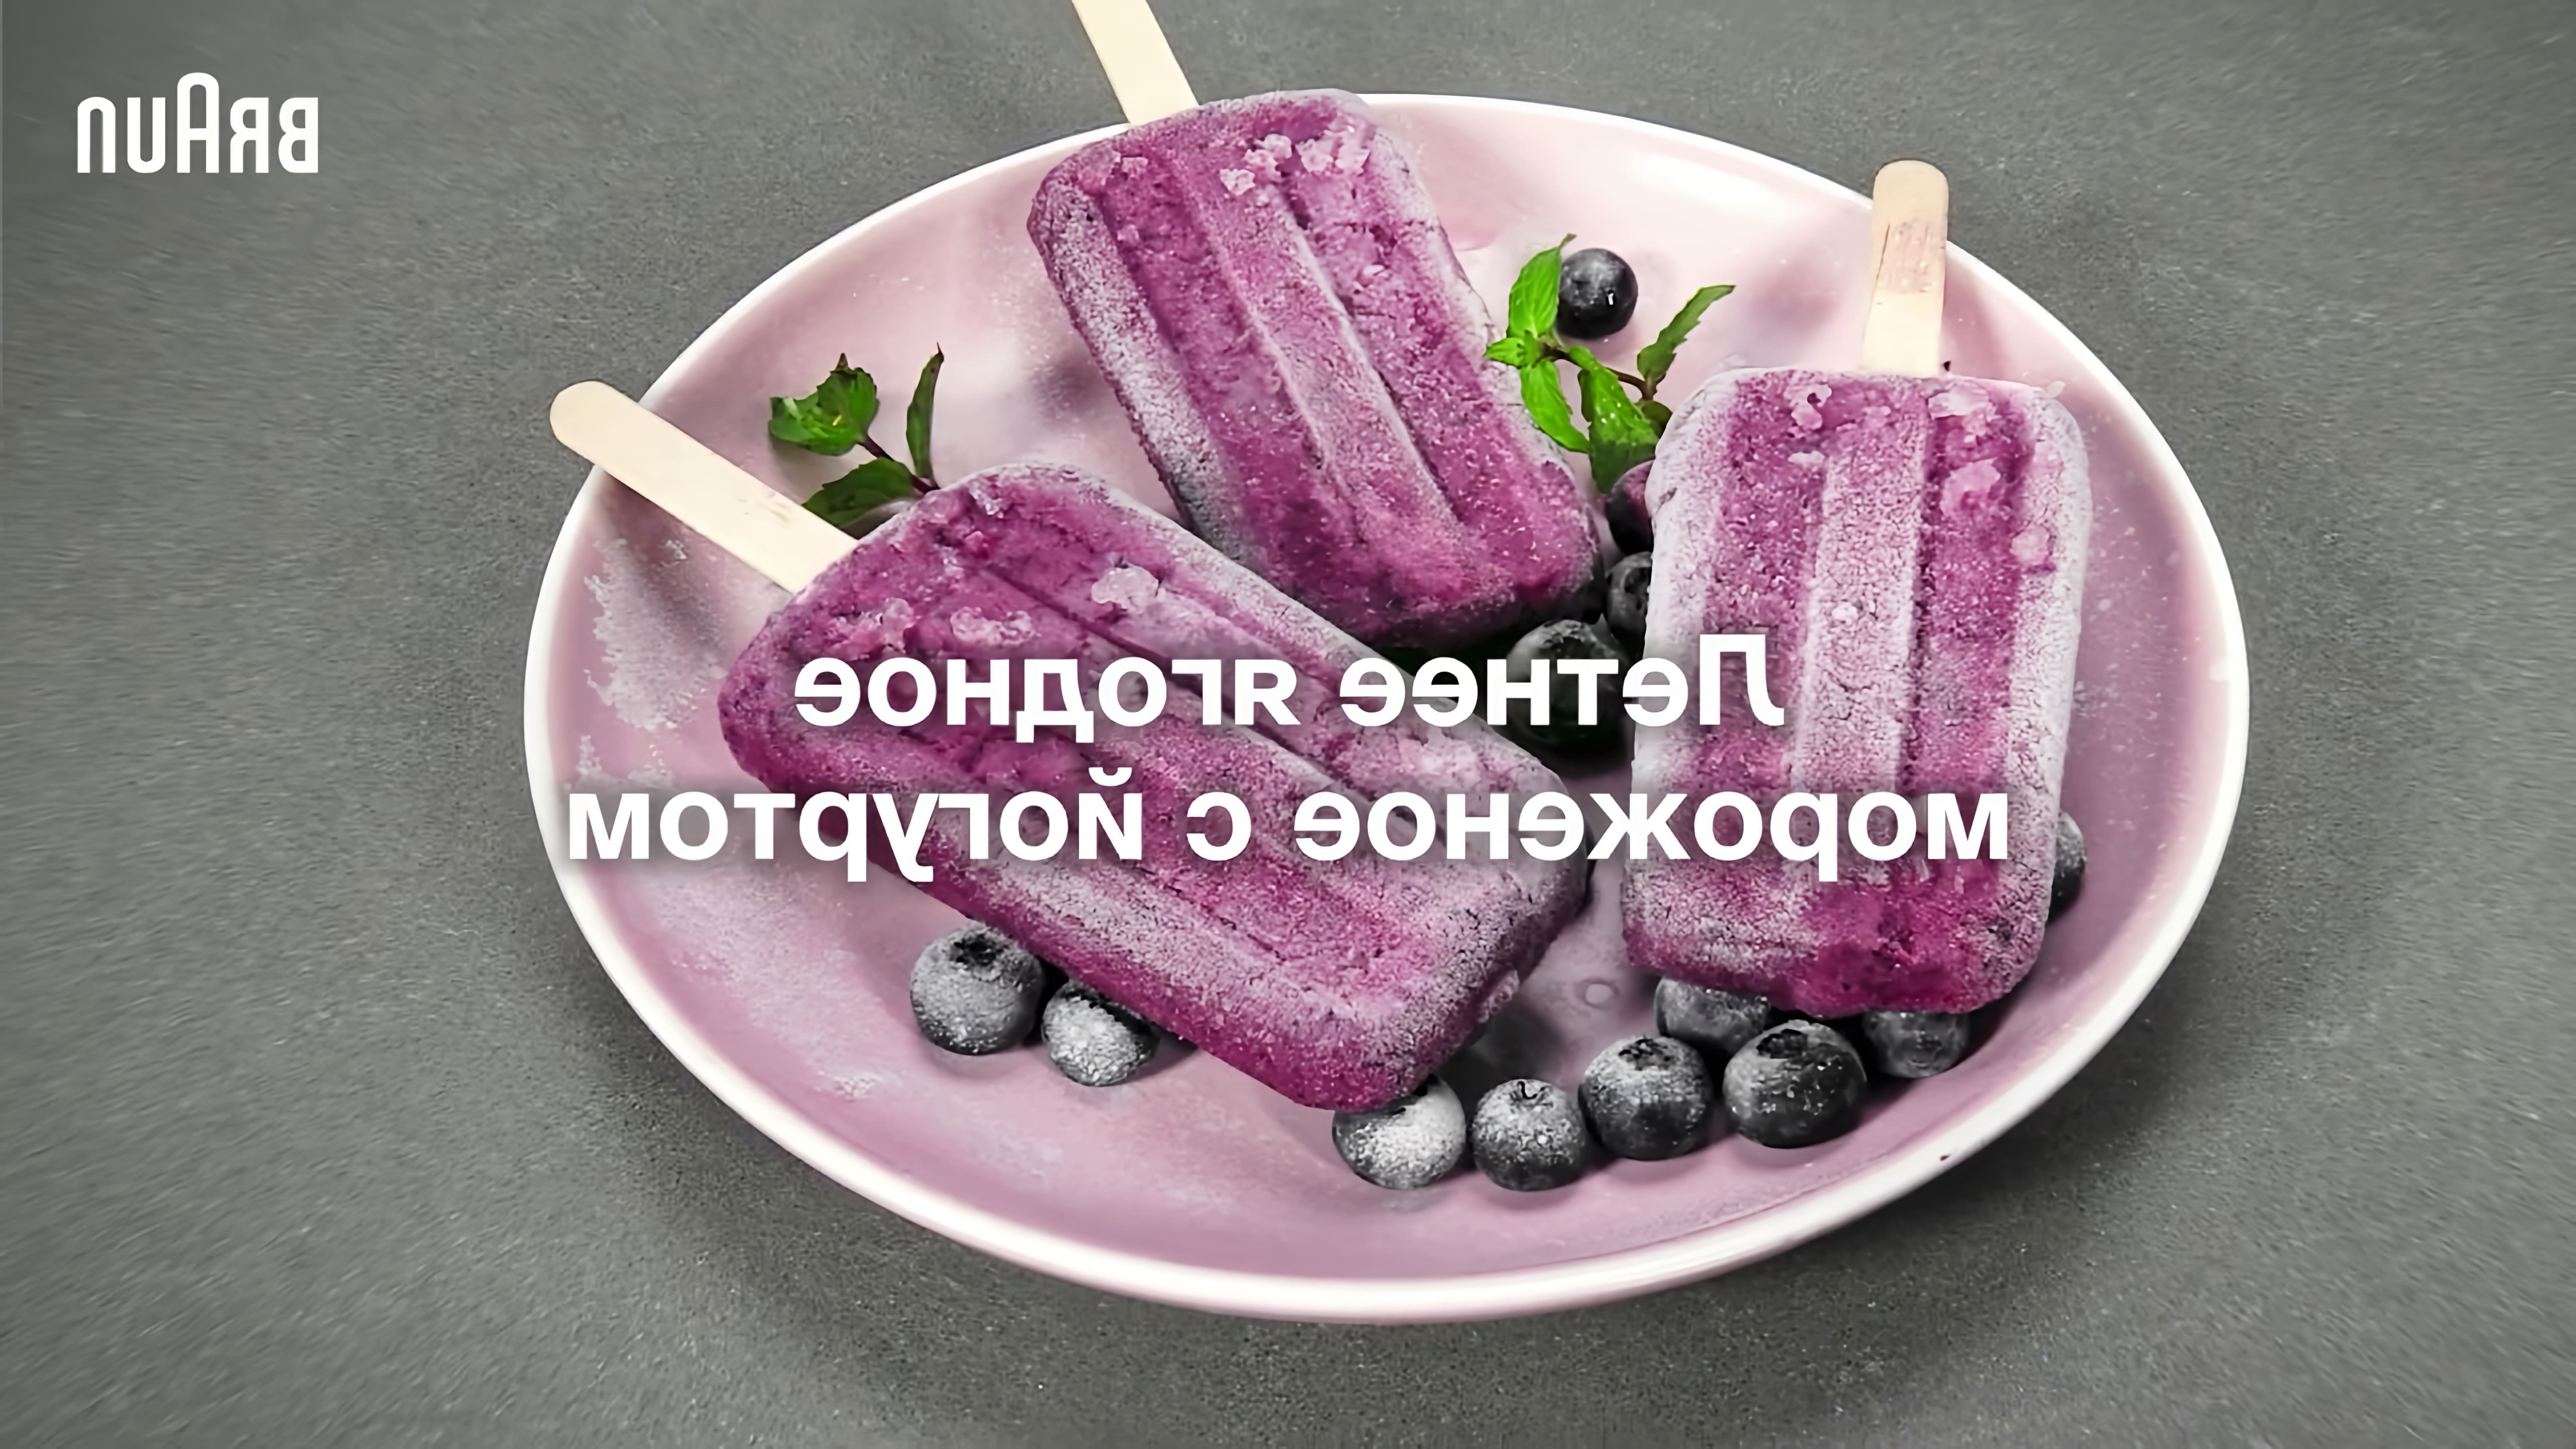 Рецепт ягодного мороженого с йогуртом в блендере Braun - это видео-ролик, который демонстрирует процесс приготовления вкусного и полезного десерта